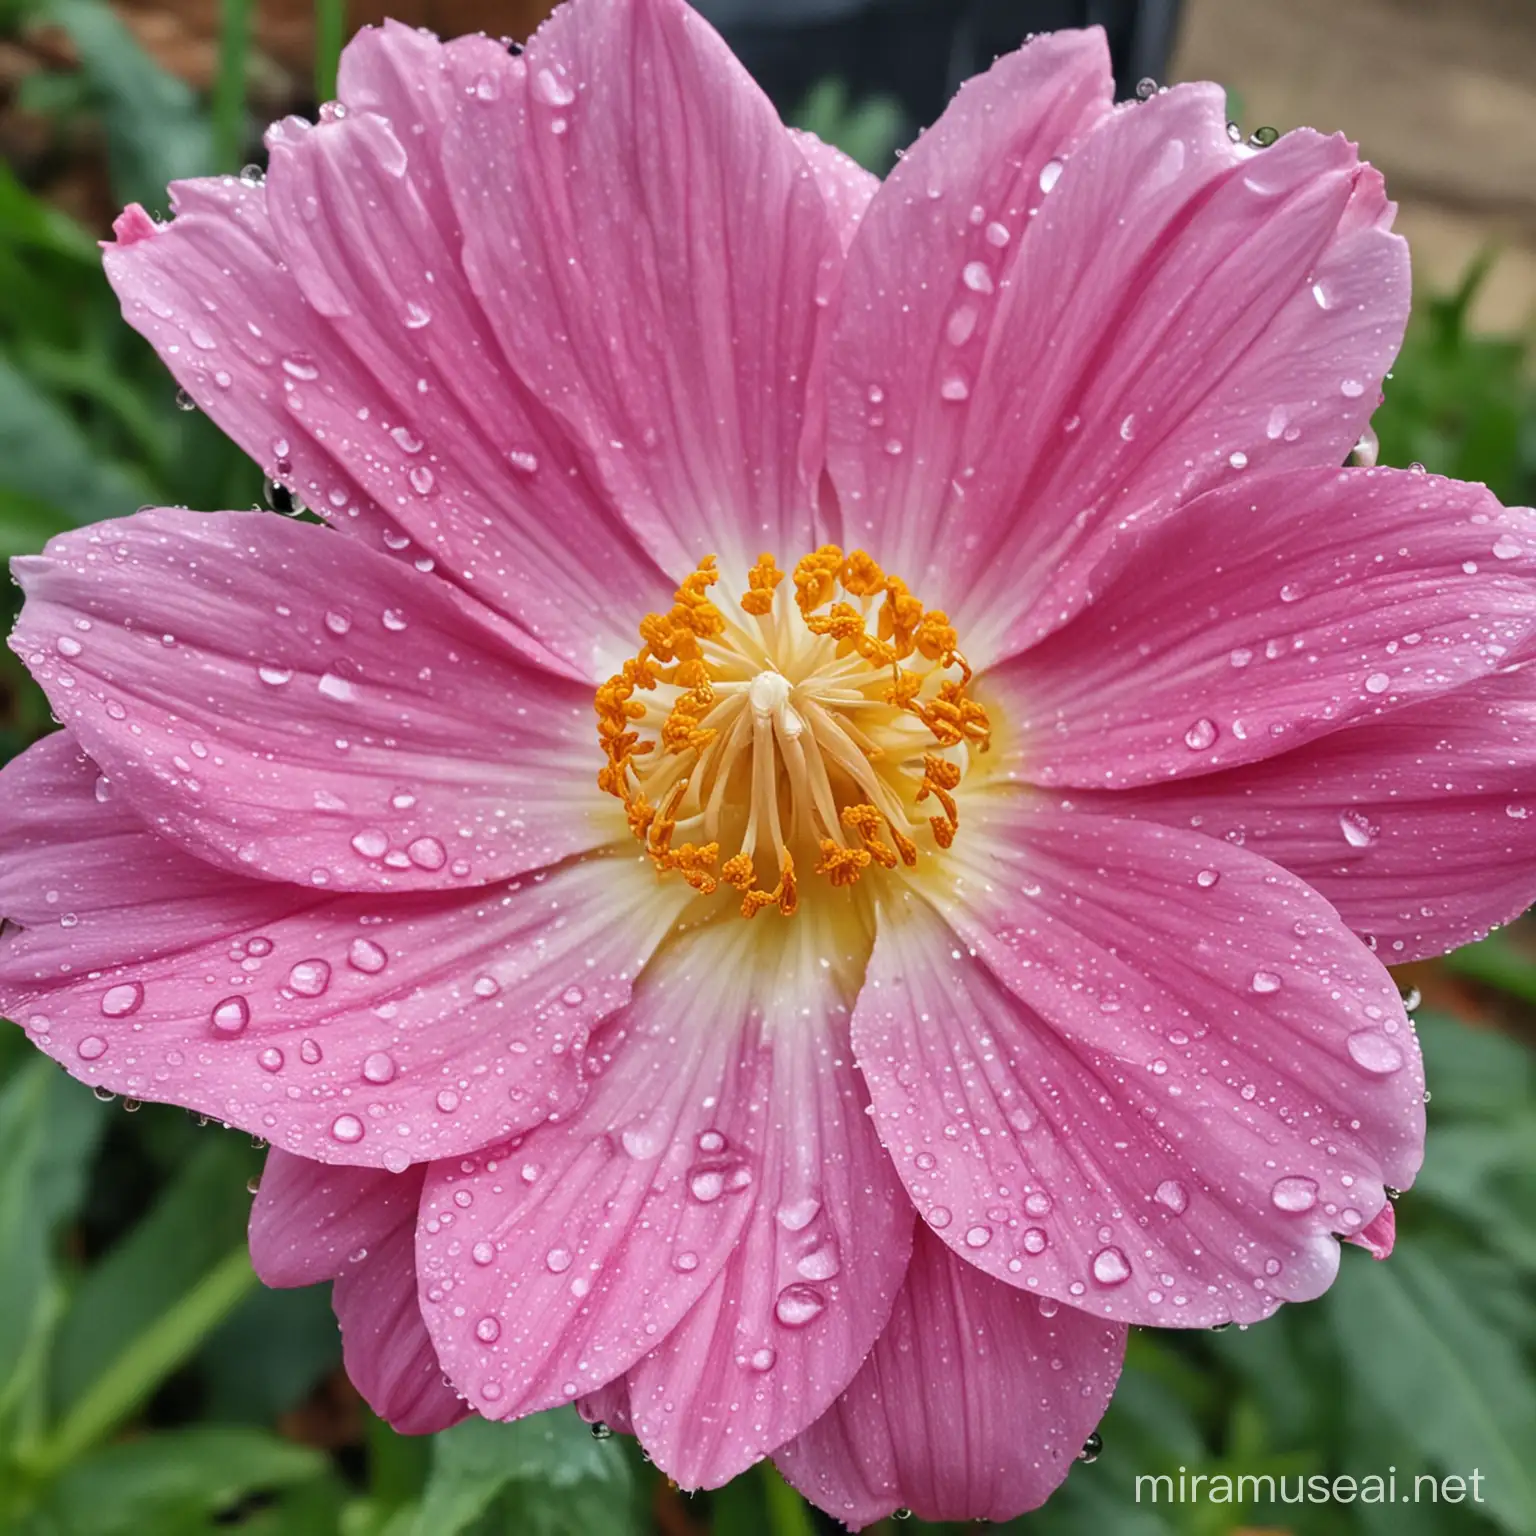 Elegant Water Droplet Enhances Blossoming Flower